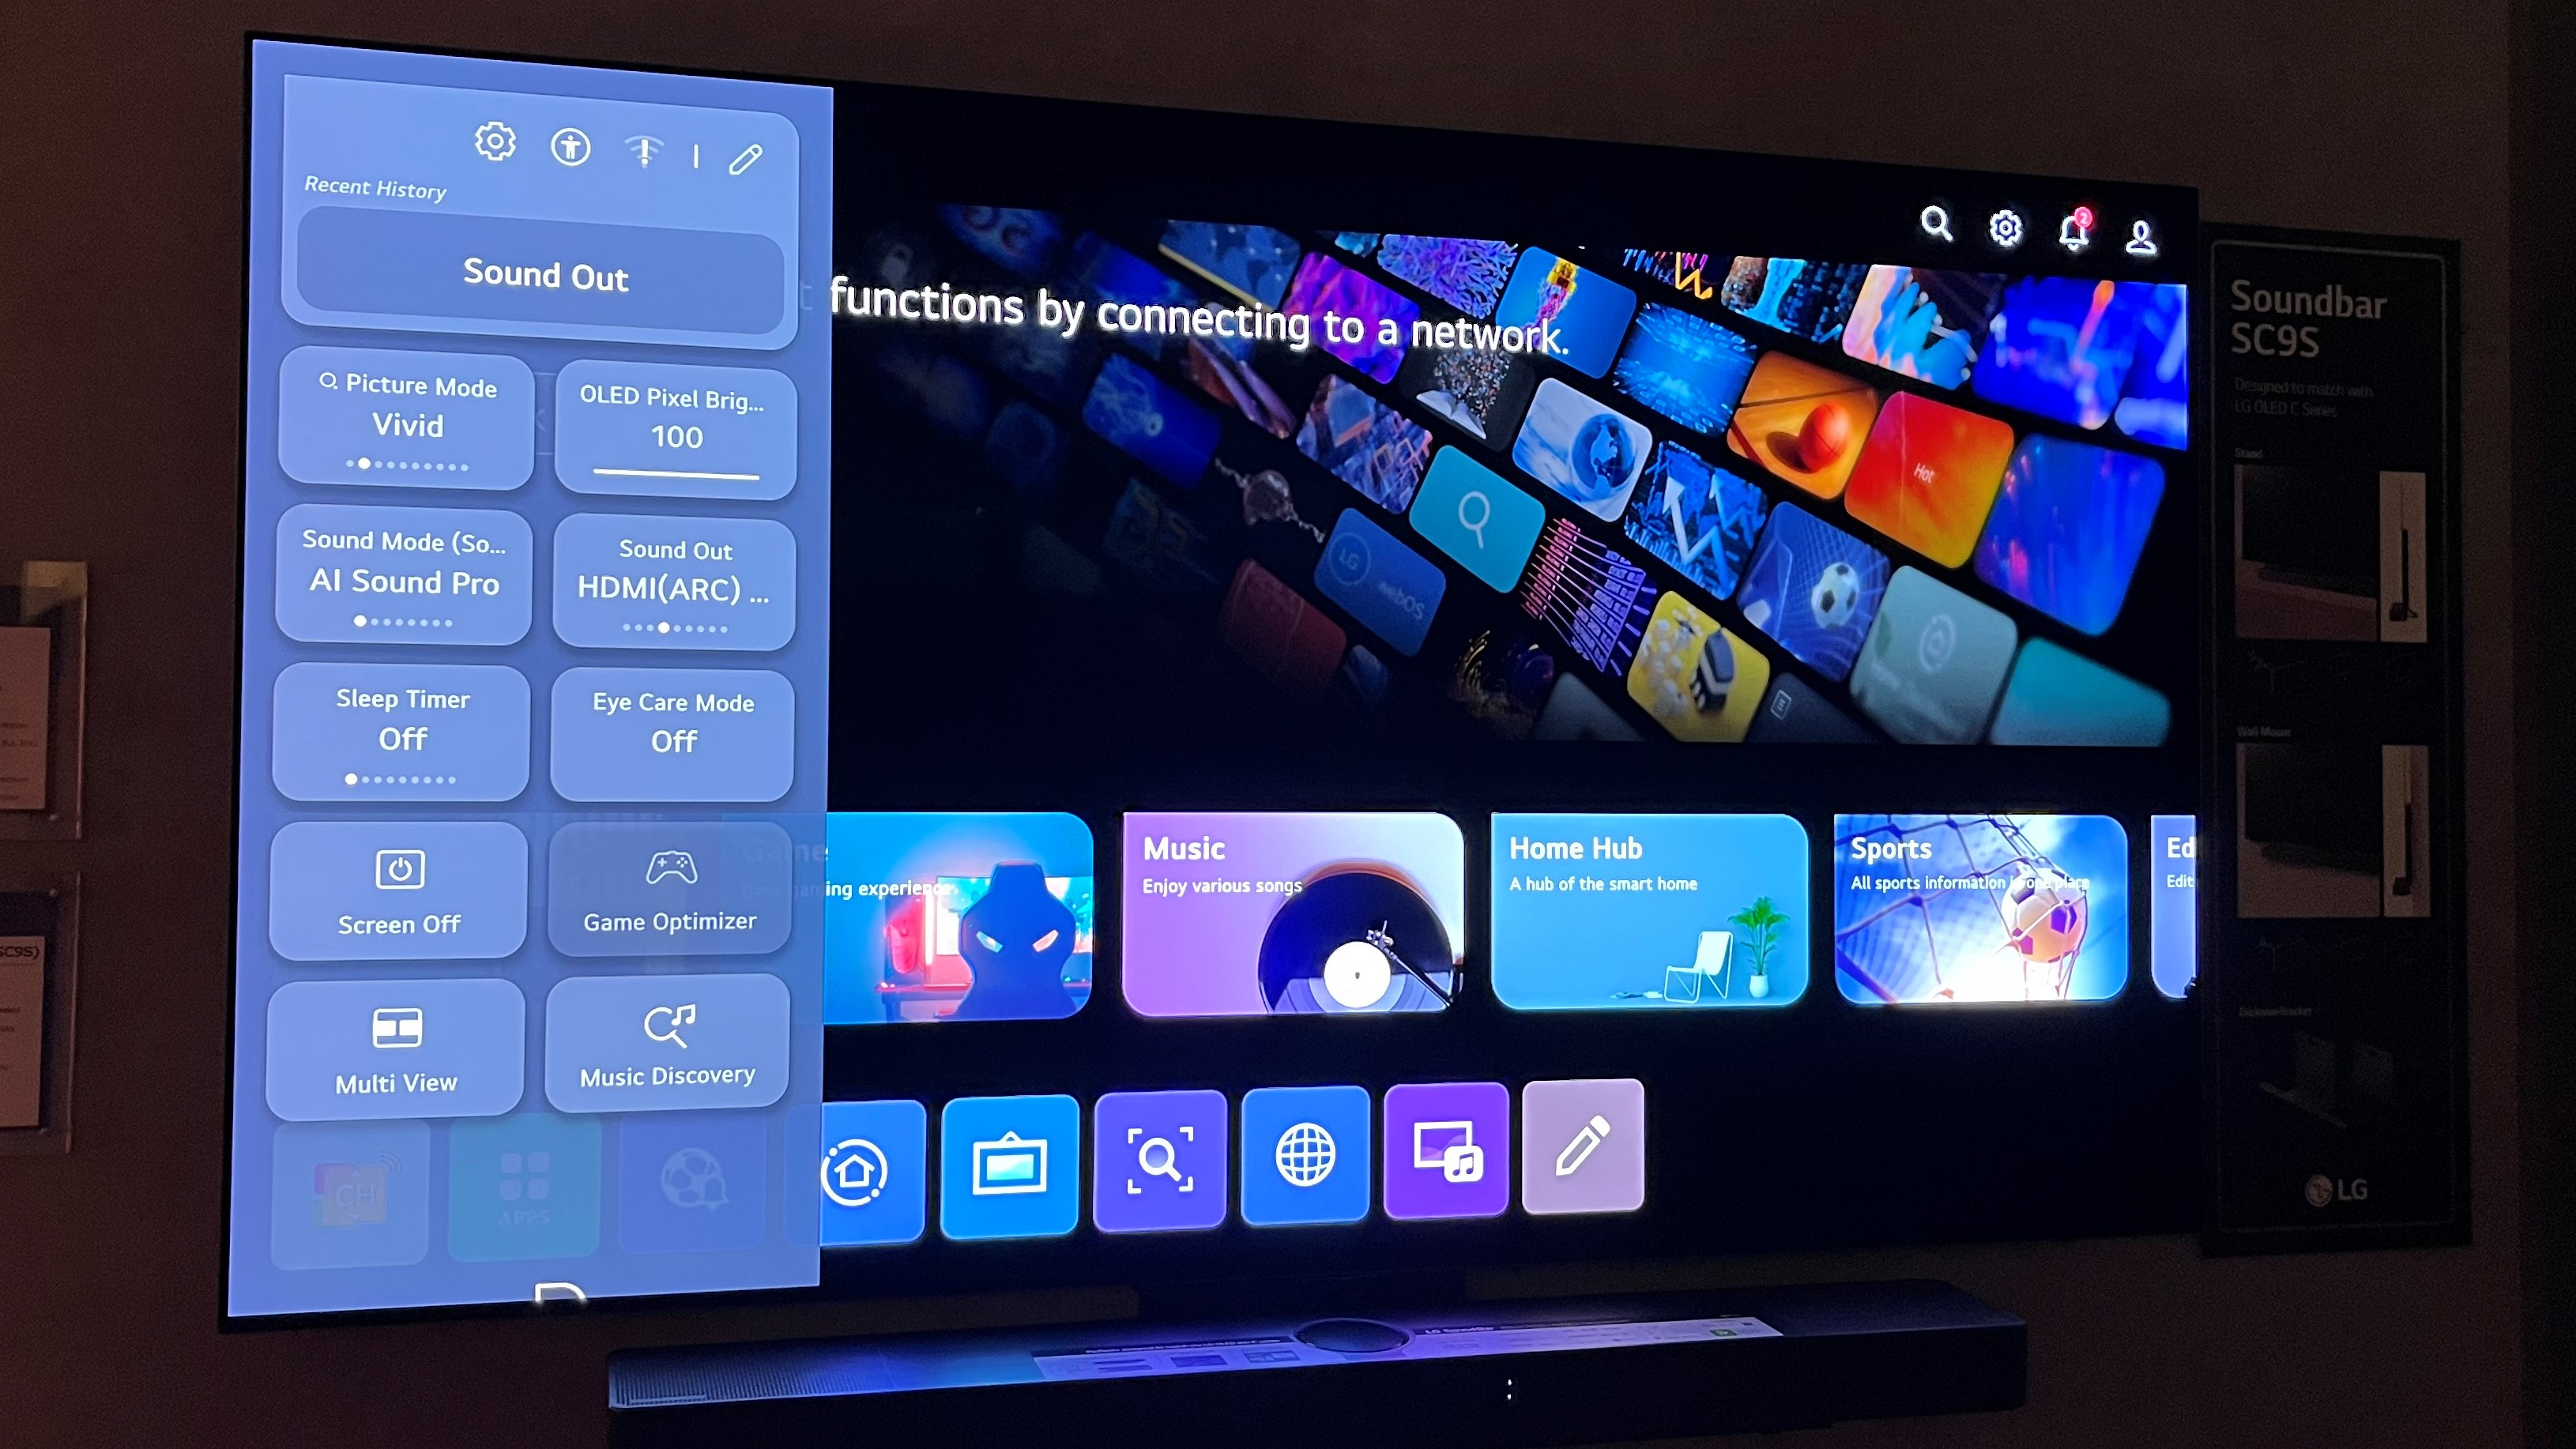 LG OLED Smart TV のオンスクリーン インターフェイスに新しいクイック設定メニューが表示されます